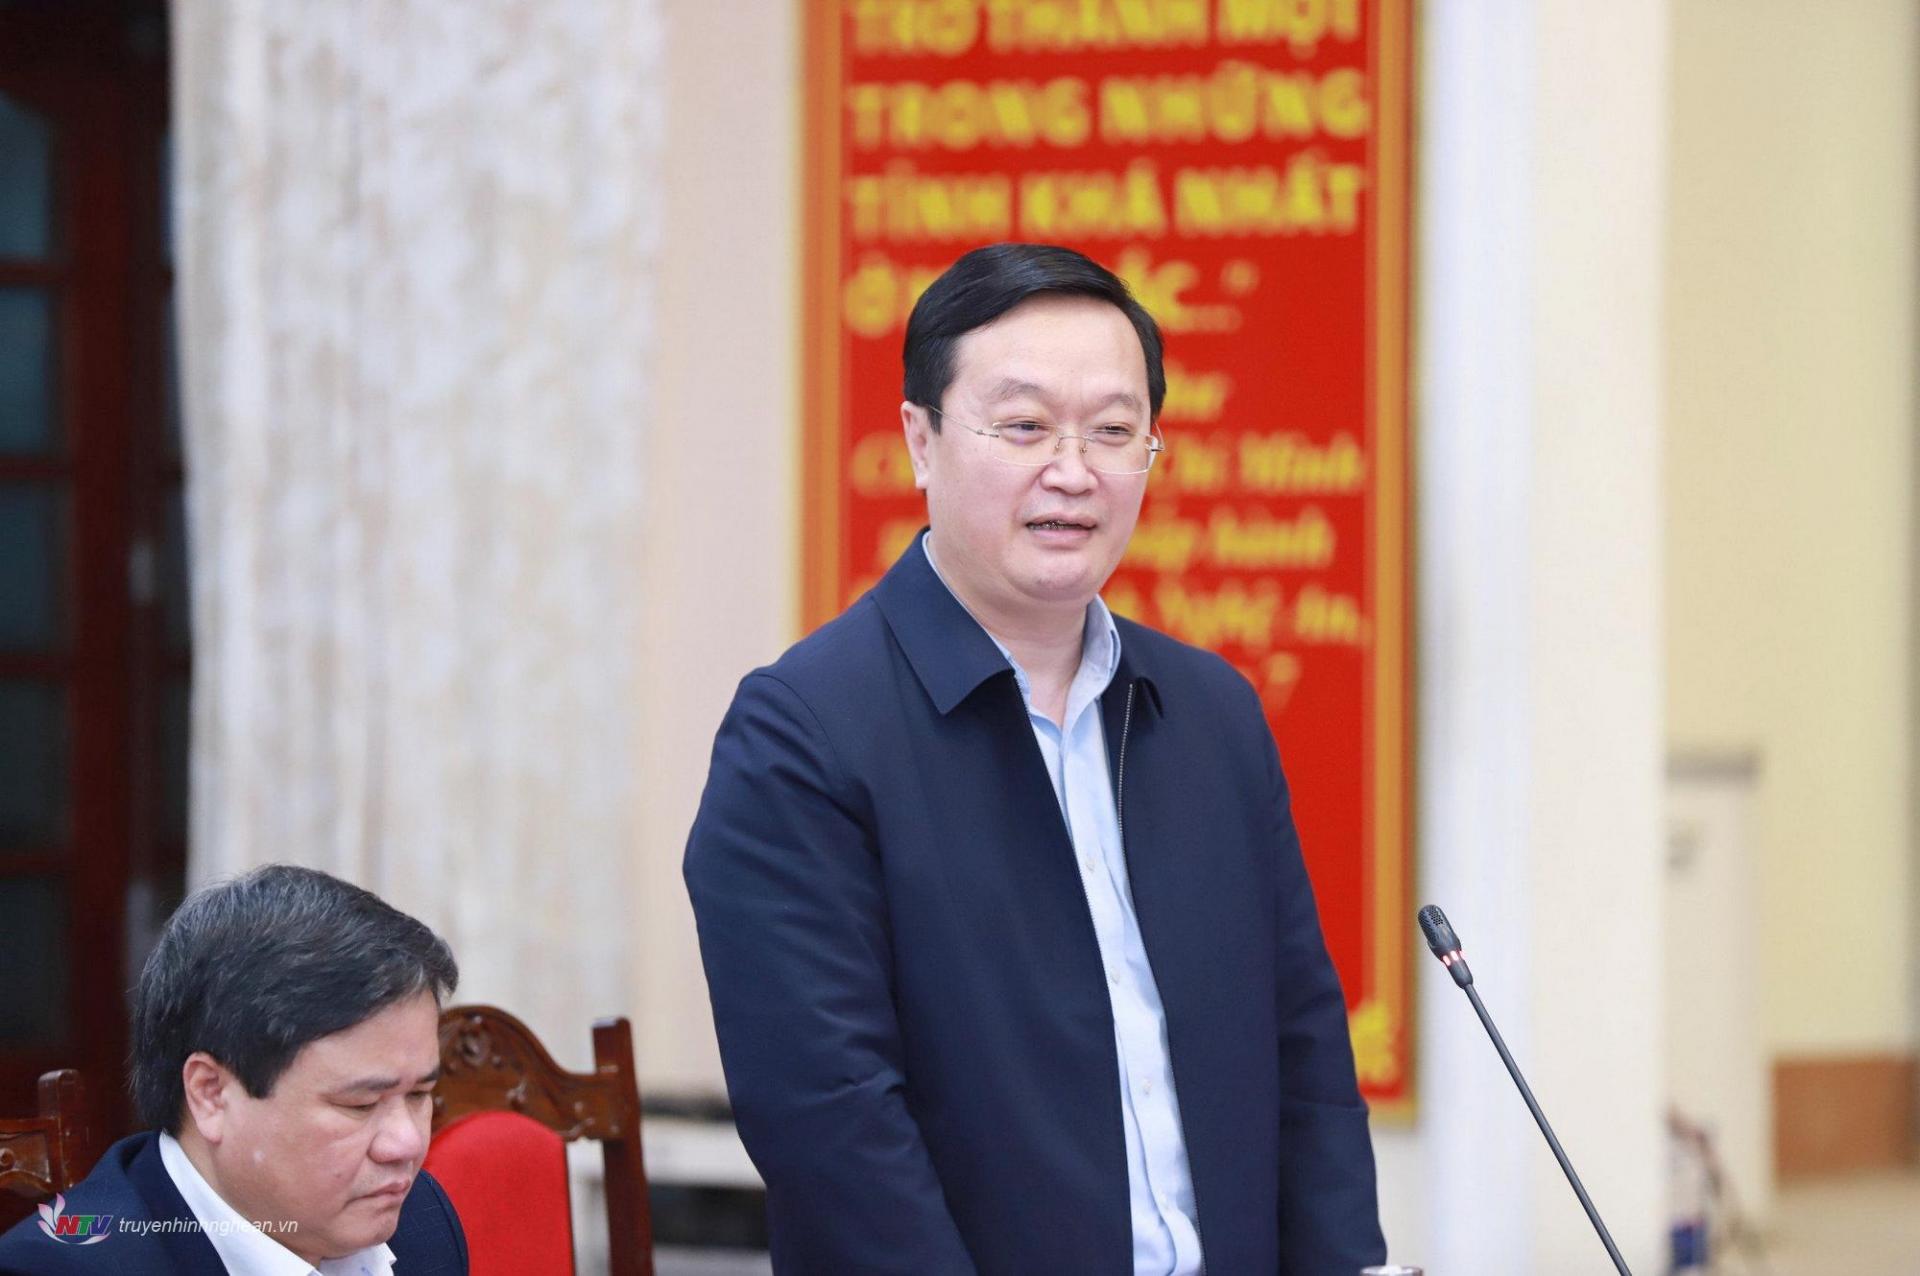 Đồng chí Nguyễn Đức Trung - Phó Bí thư Tỉnh ủy, Chủ tịch UBND tỉnh phát biểu tại phiên họp.